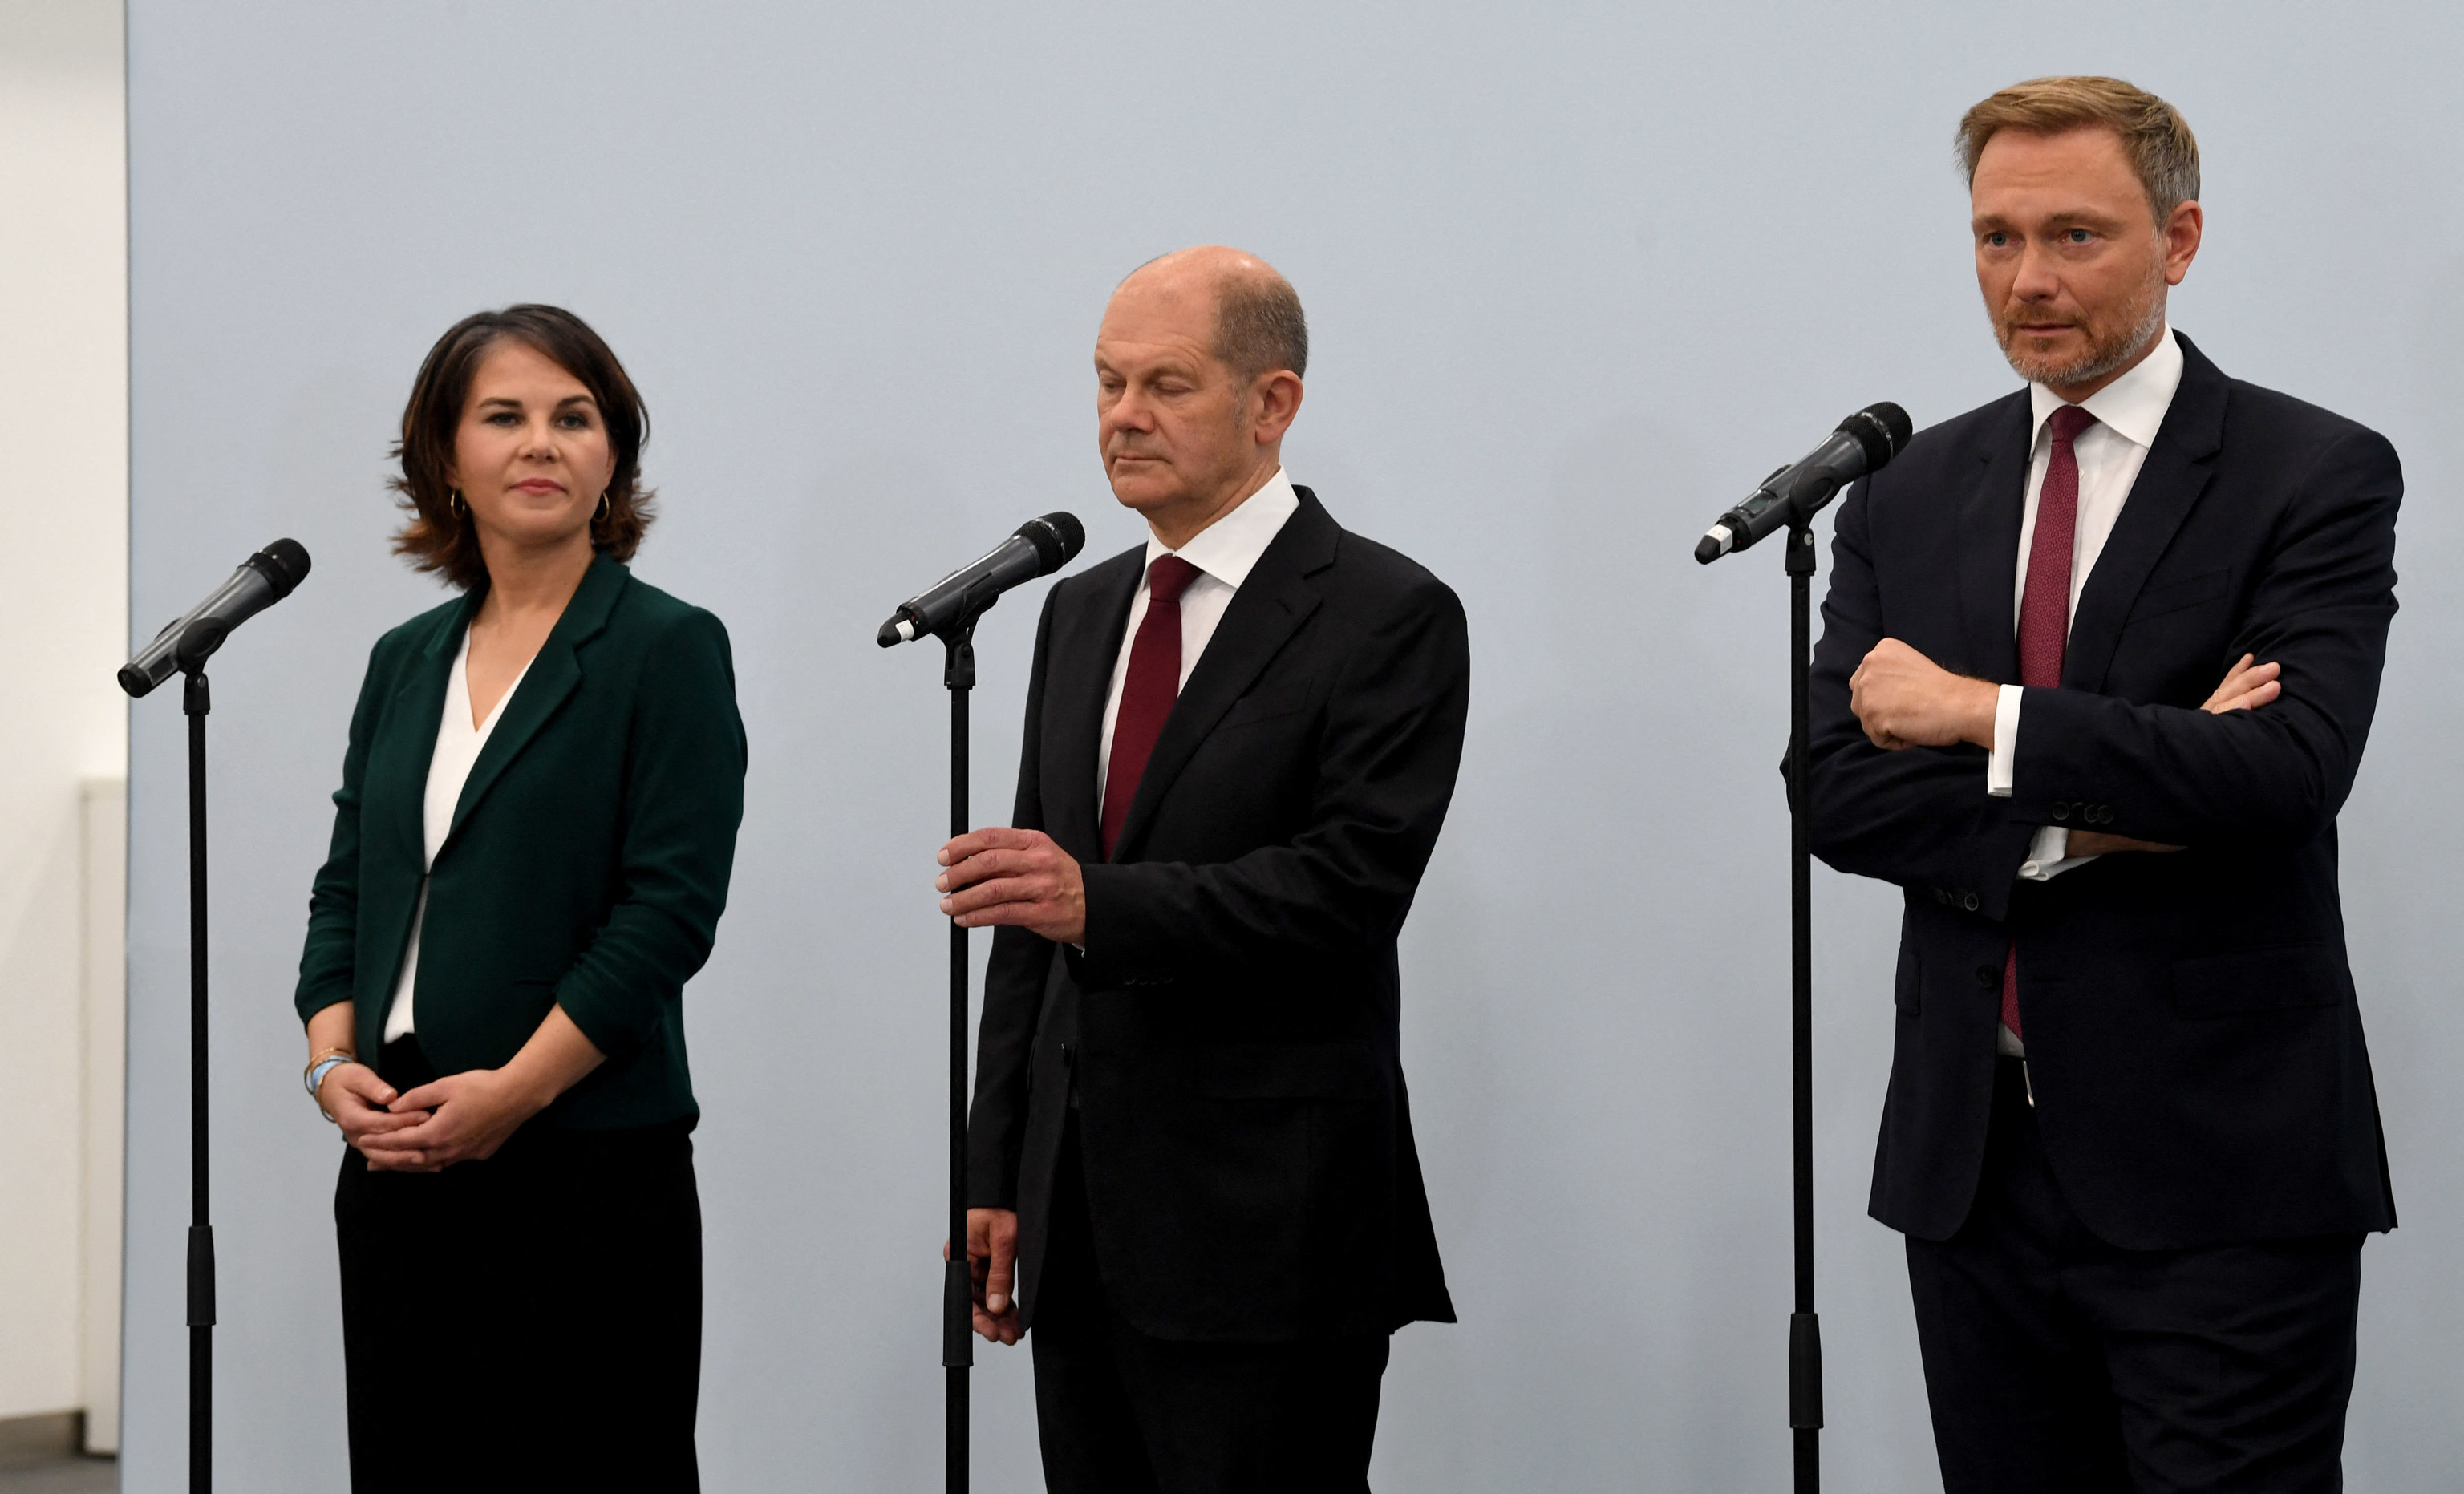 De izquierda a derecha, Annalena Baerbock (Los Verdes), Olaf Scholz (Socialdemcratas) y Christian Lindner (Liberales).